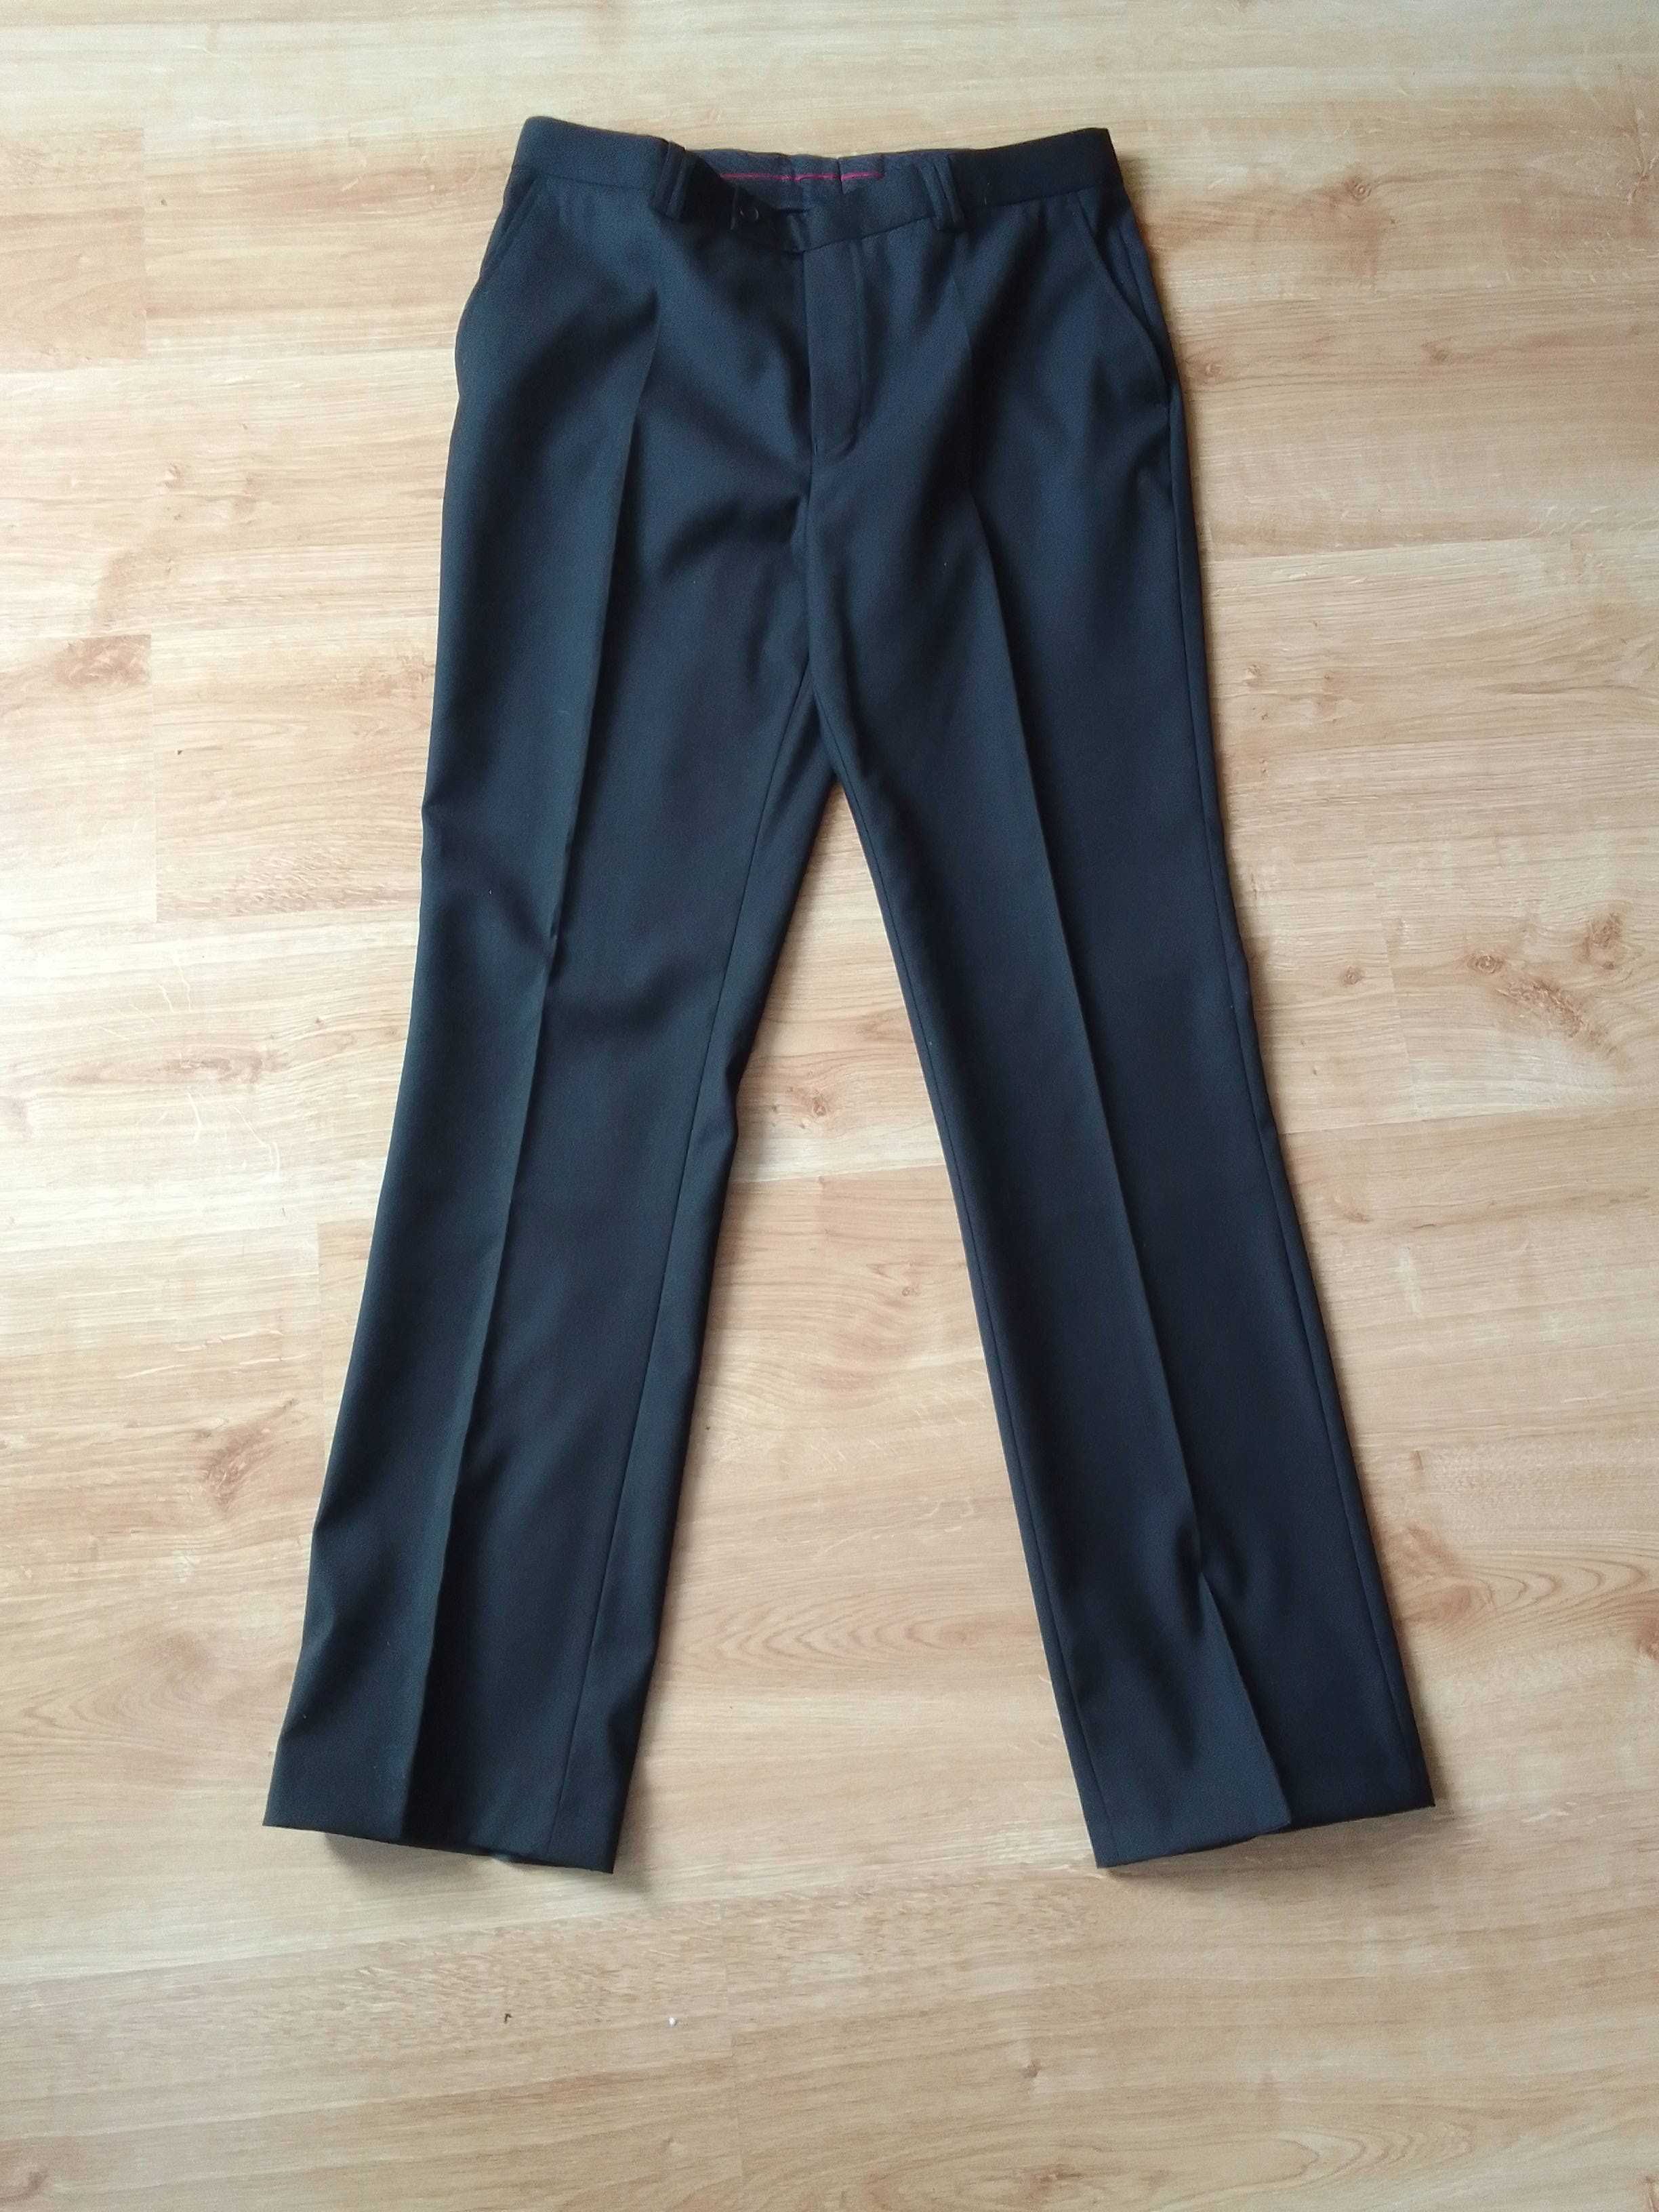 Spodnie męskie czarne garniturowe rozm. 176/88 . L